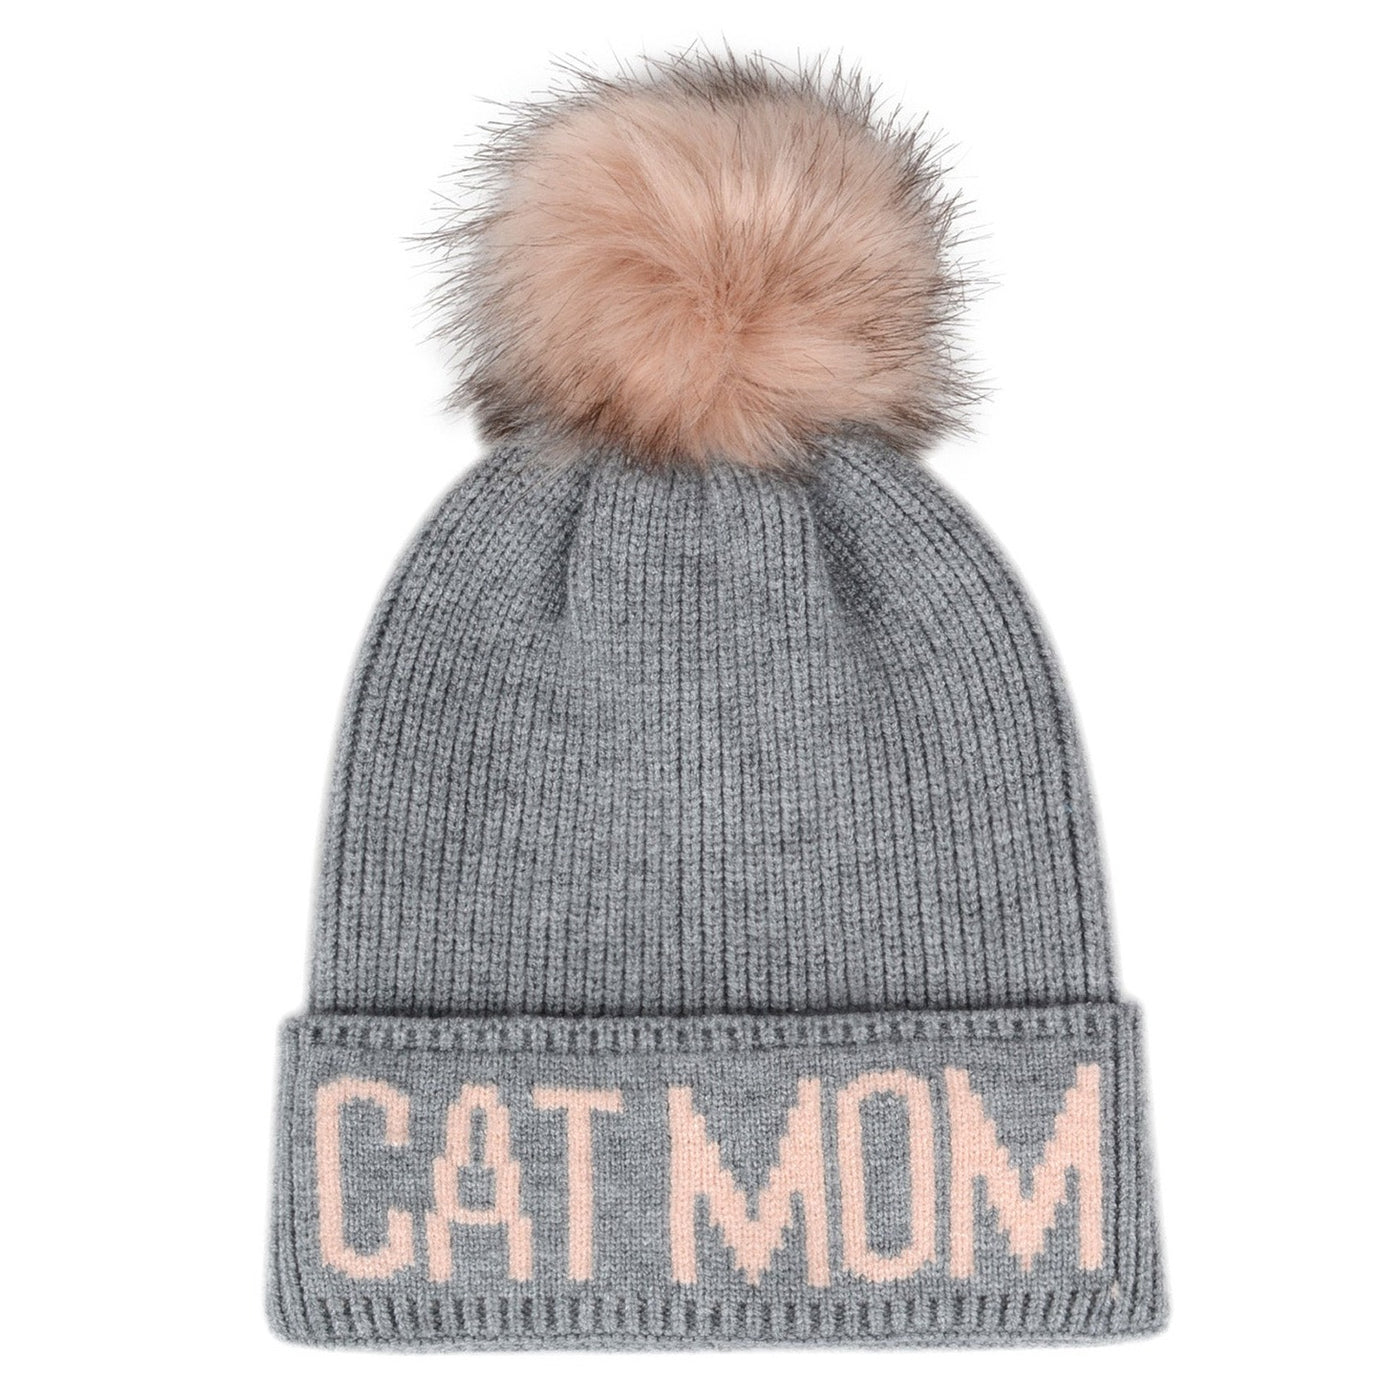 Hatphile Cat Mom Pompom Knit Beanie Toque